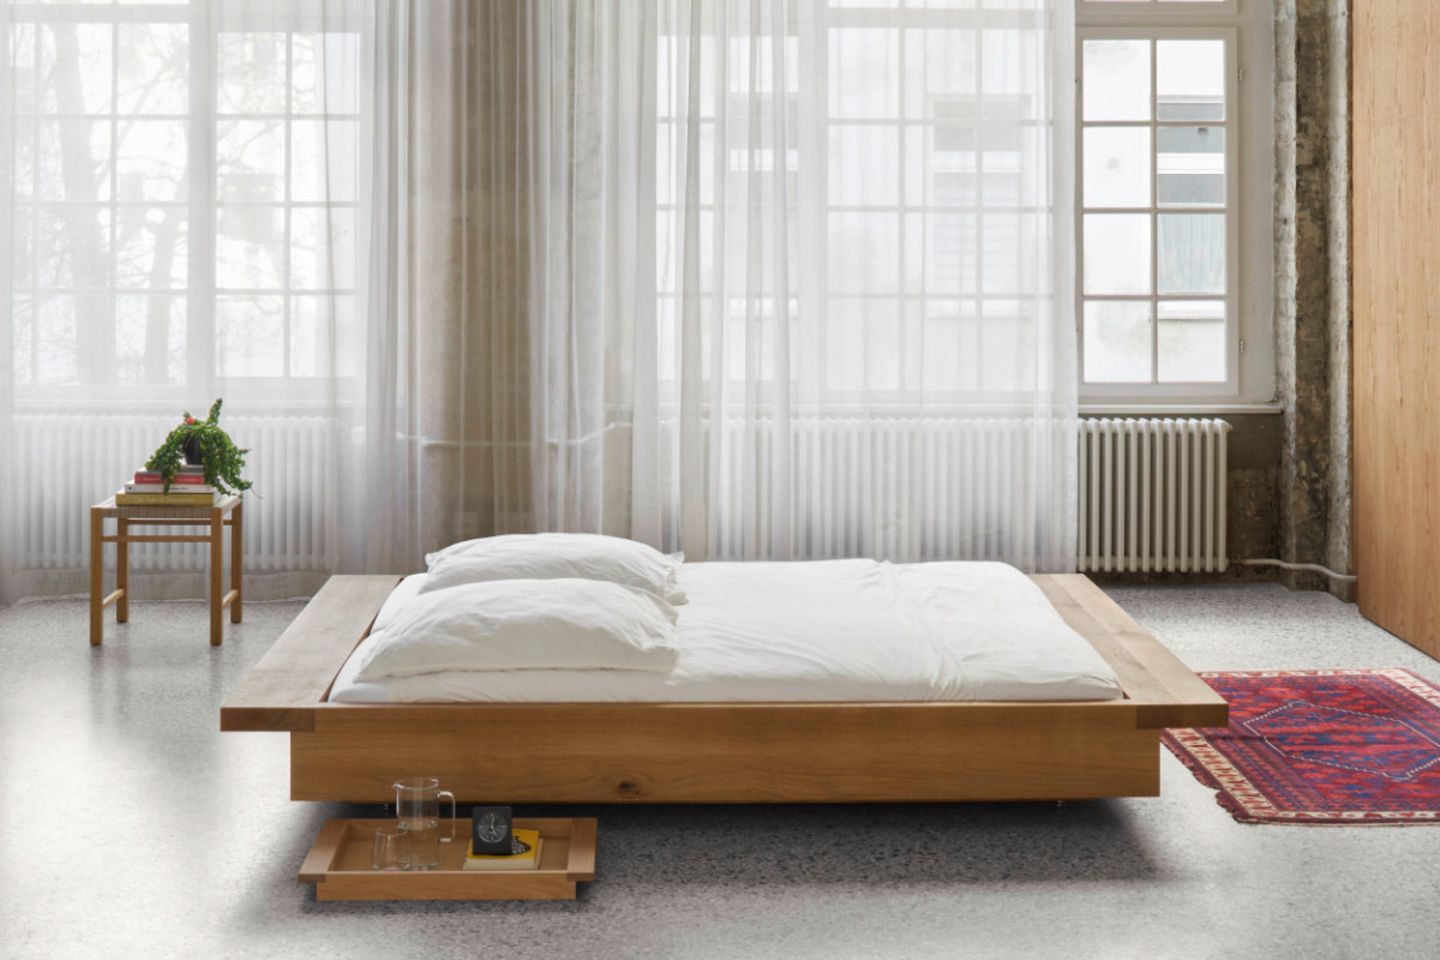 Bodennahes Bett "Noah" aus Holz von e15 in großem Schlafzimmer